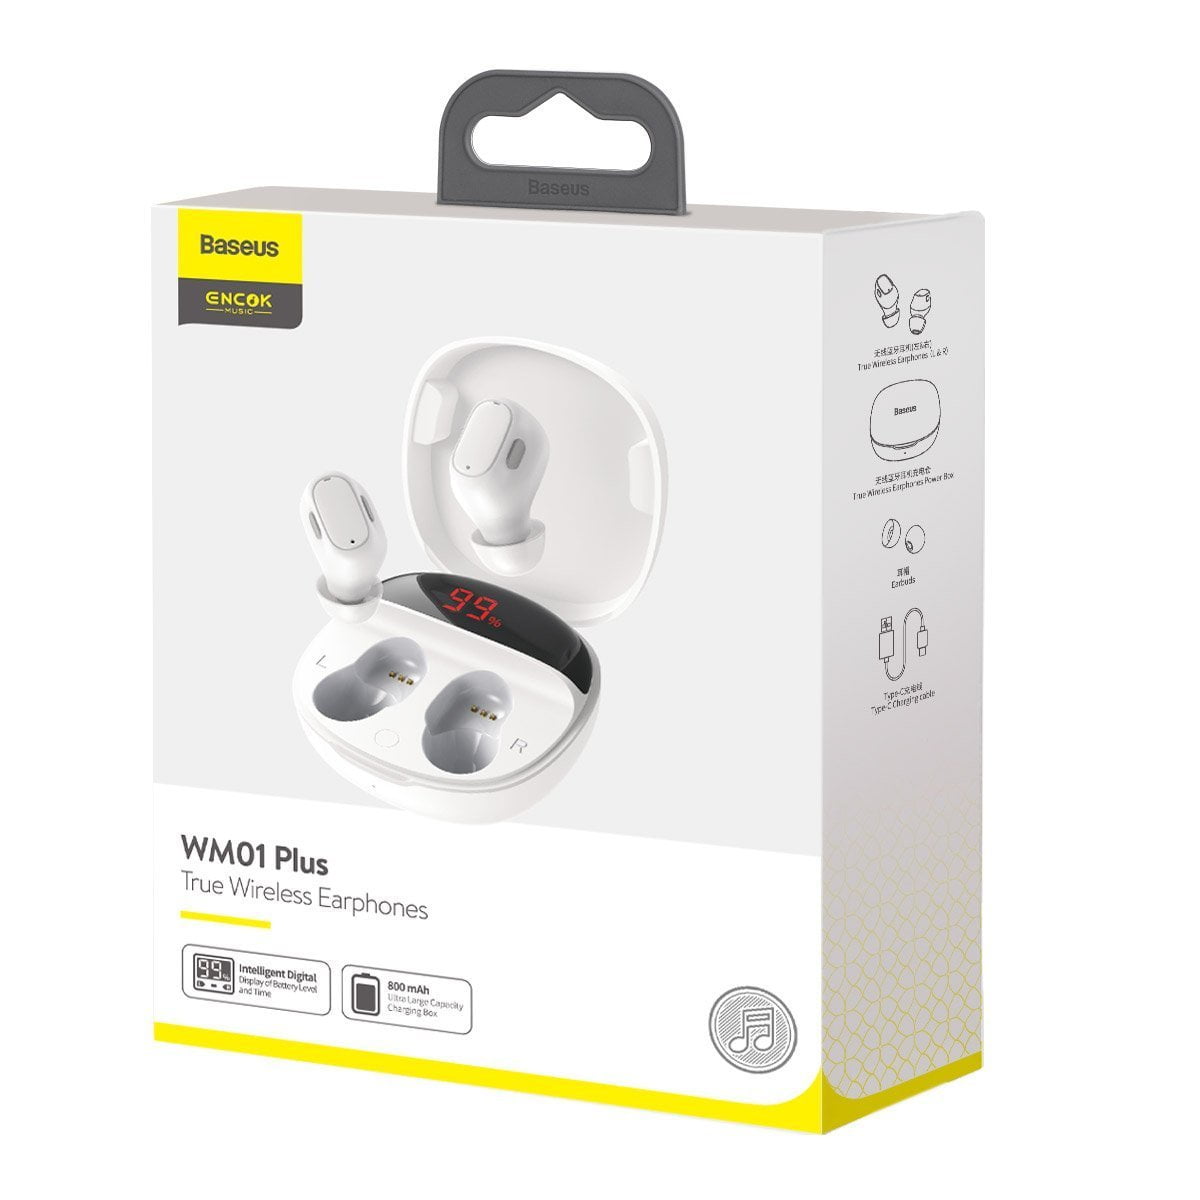 Baseus Encok wireless headphones WM01 Plus